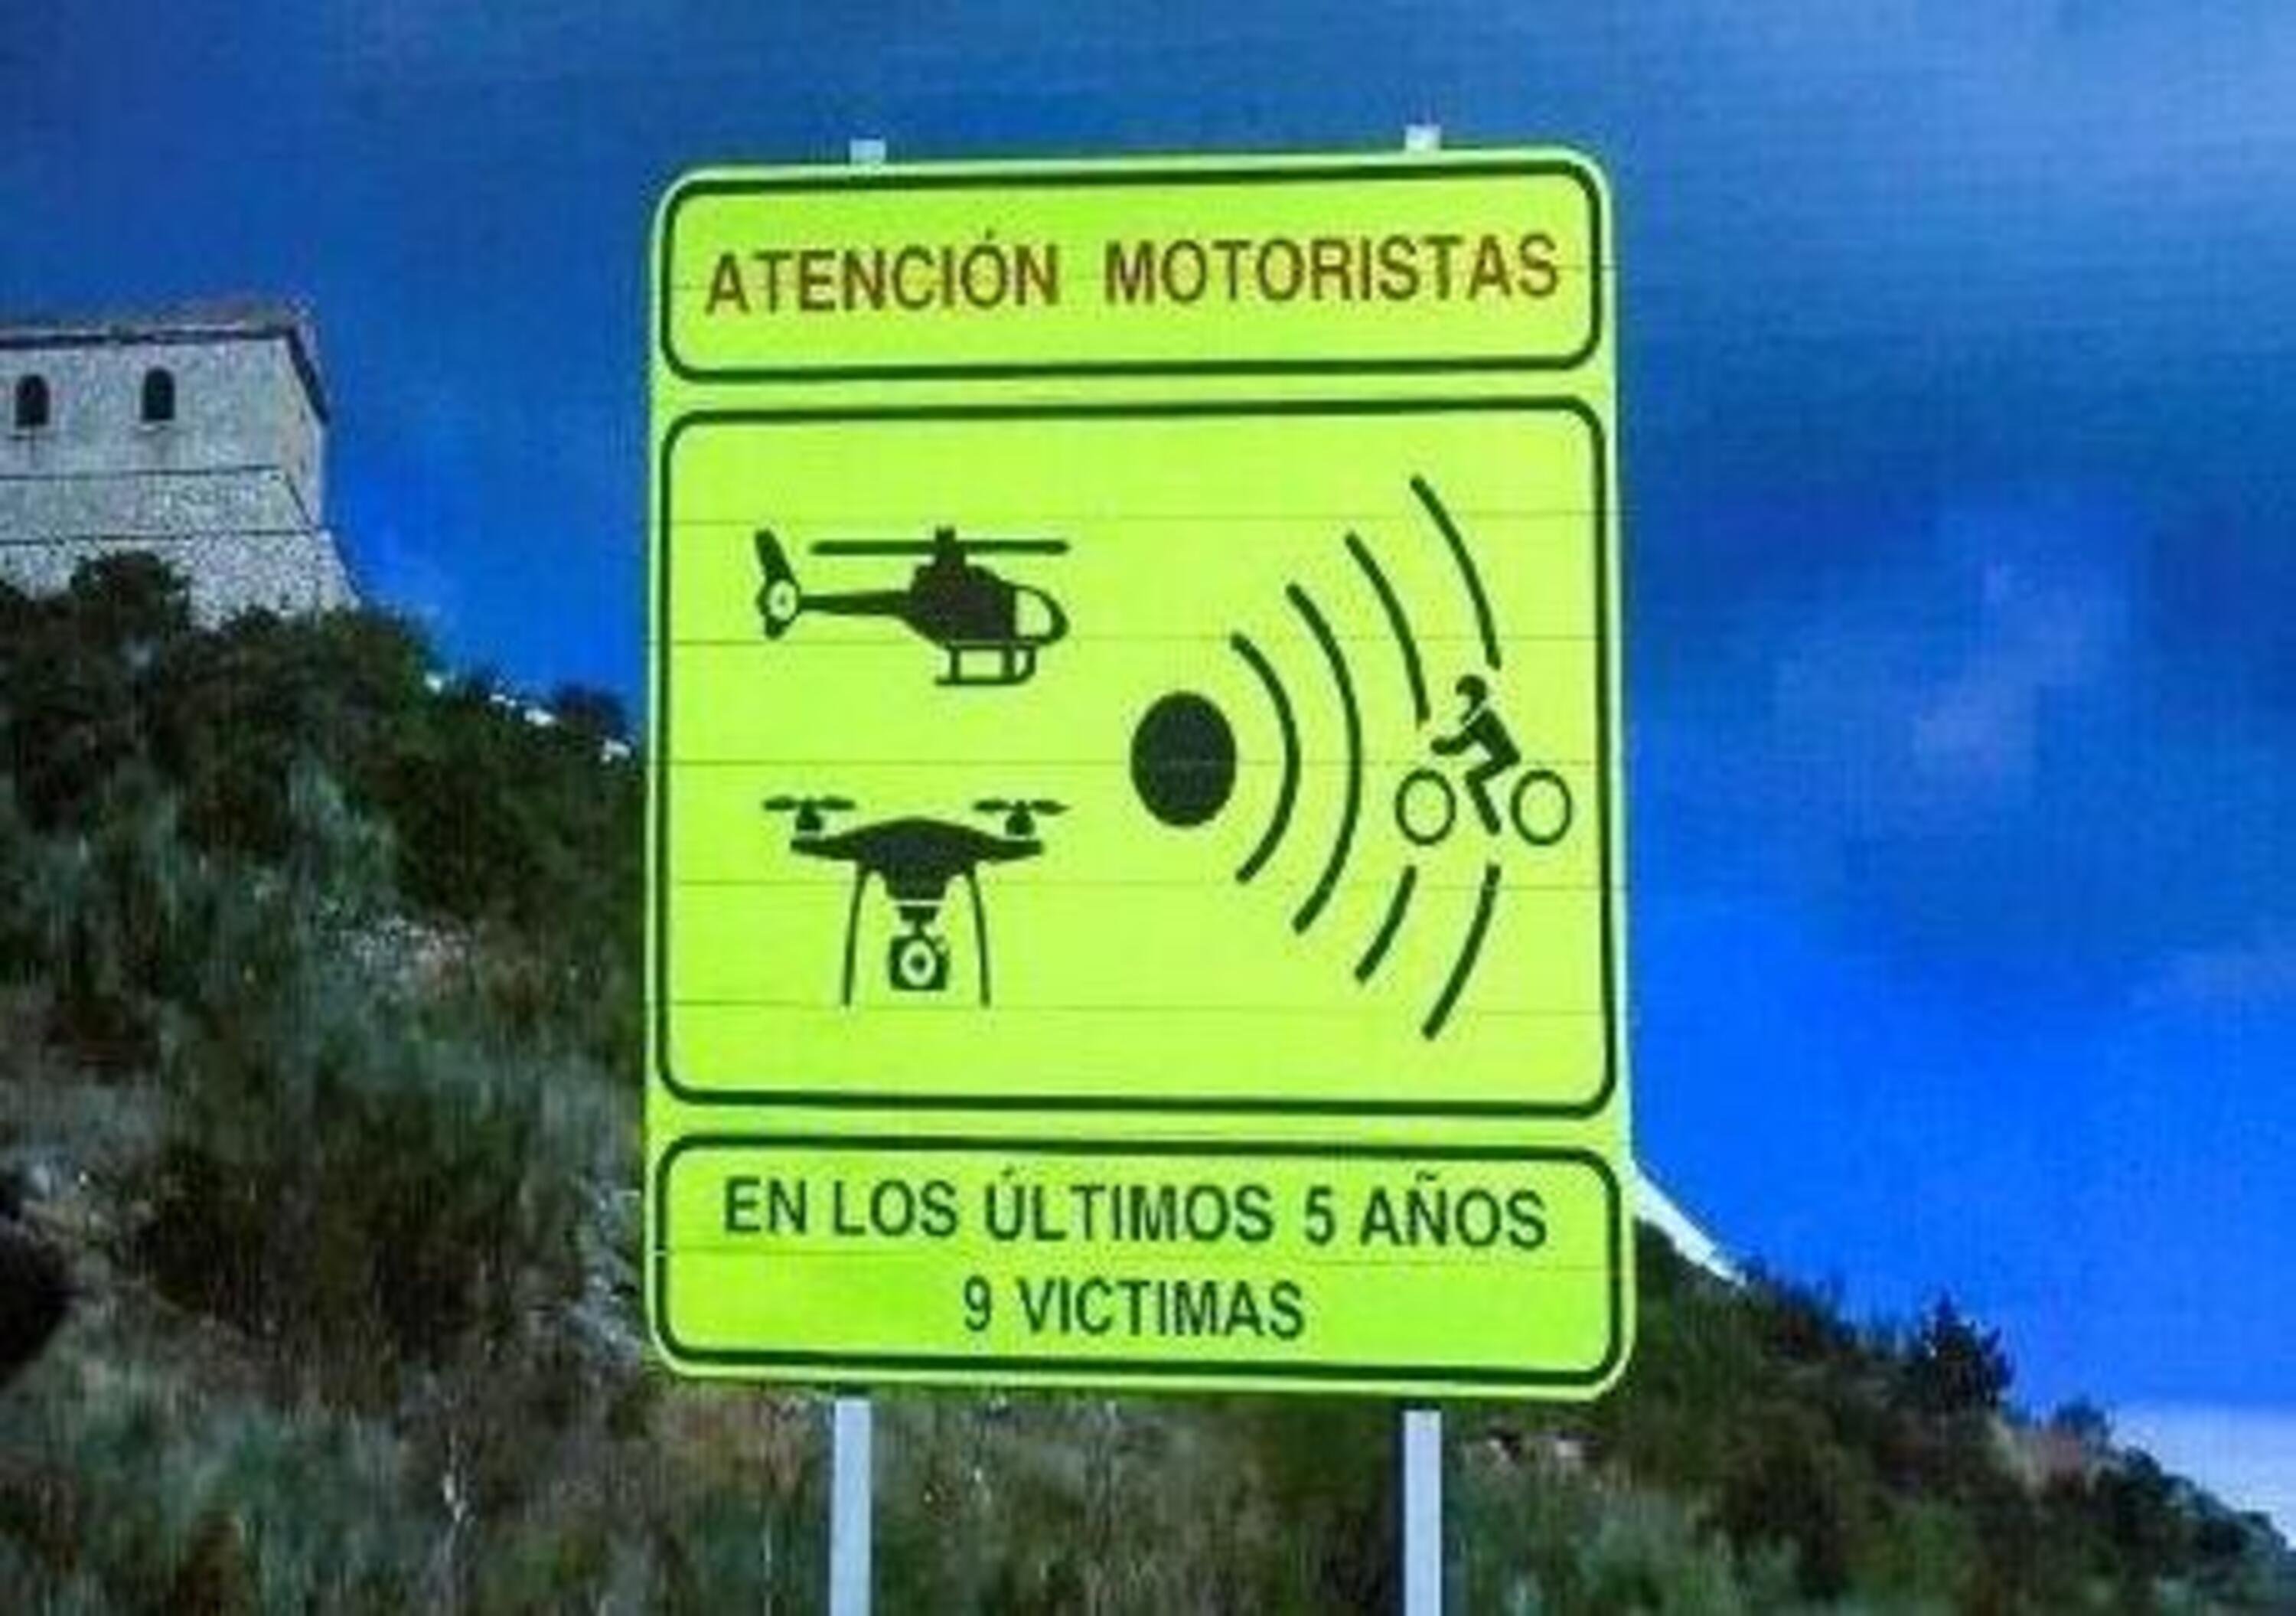 In Spagna stanno per arrivare nuovi segnali stradali per motociclisti